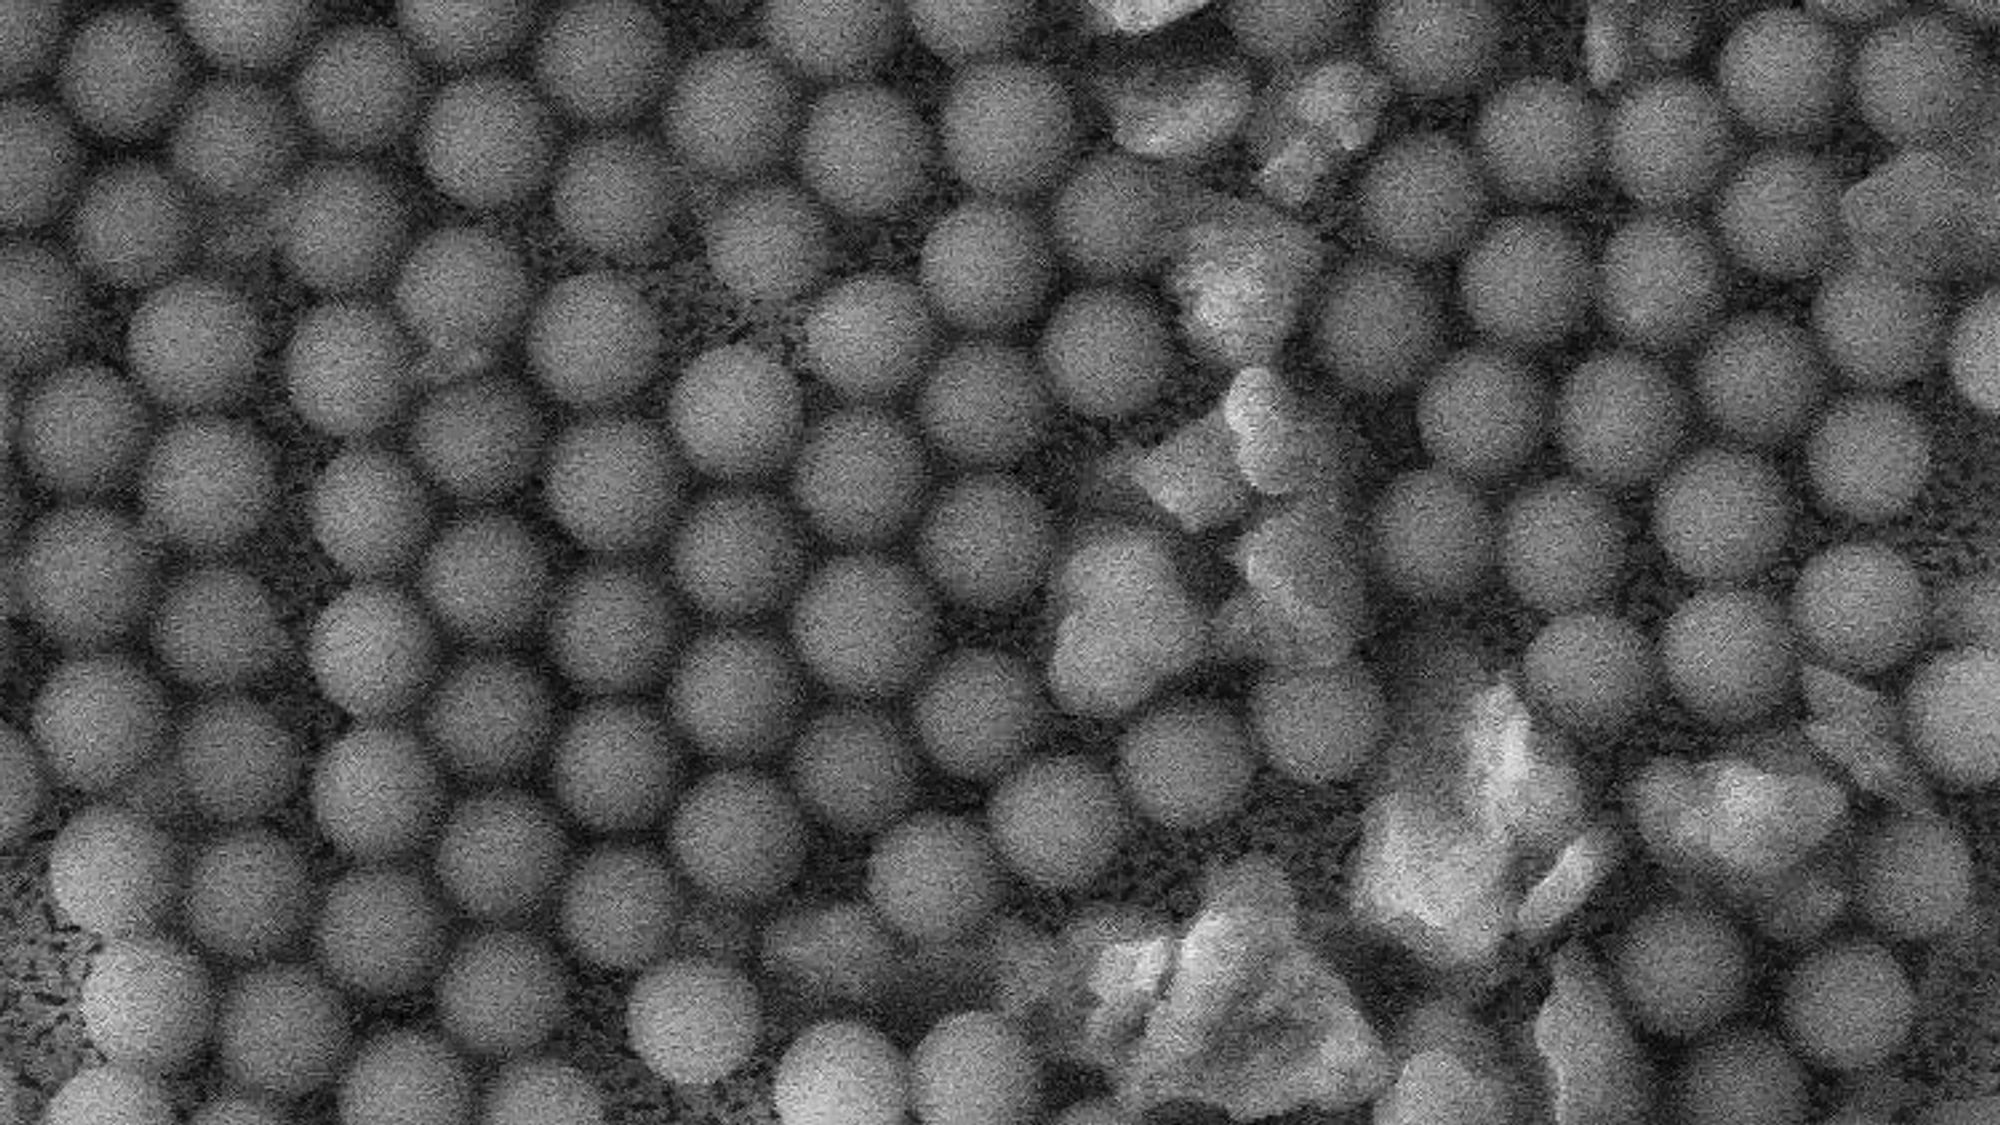 Disse ørsmå kulene - bildet er tatt med elektronmikroskop - brukes nå til å produsere test-sett for koronaviruset.